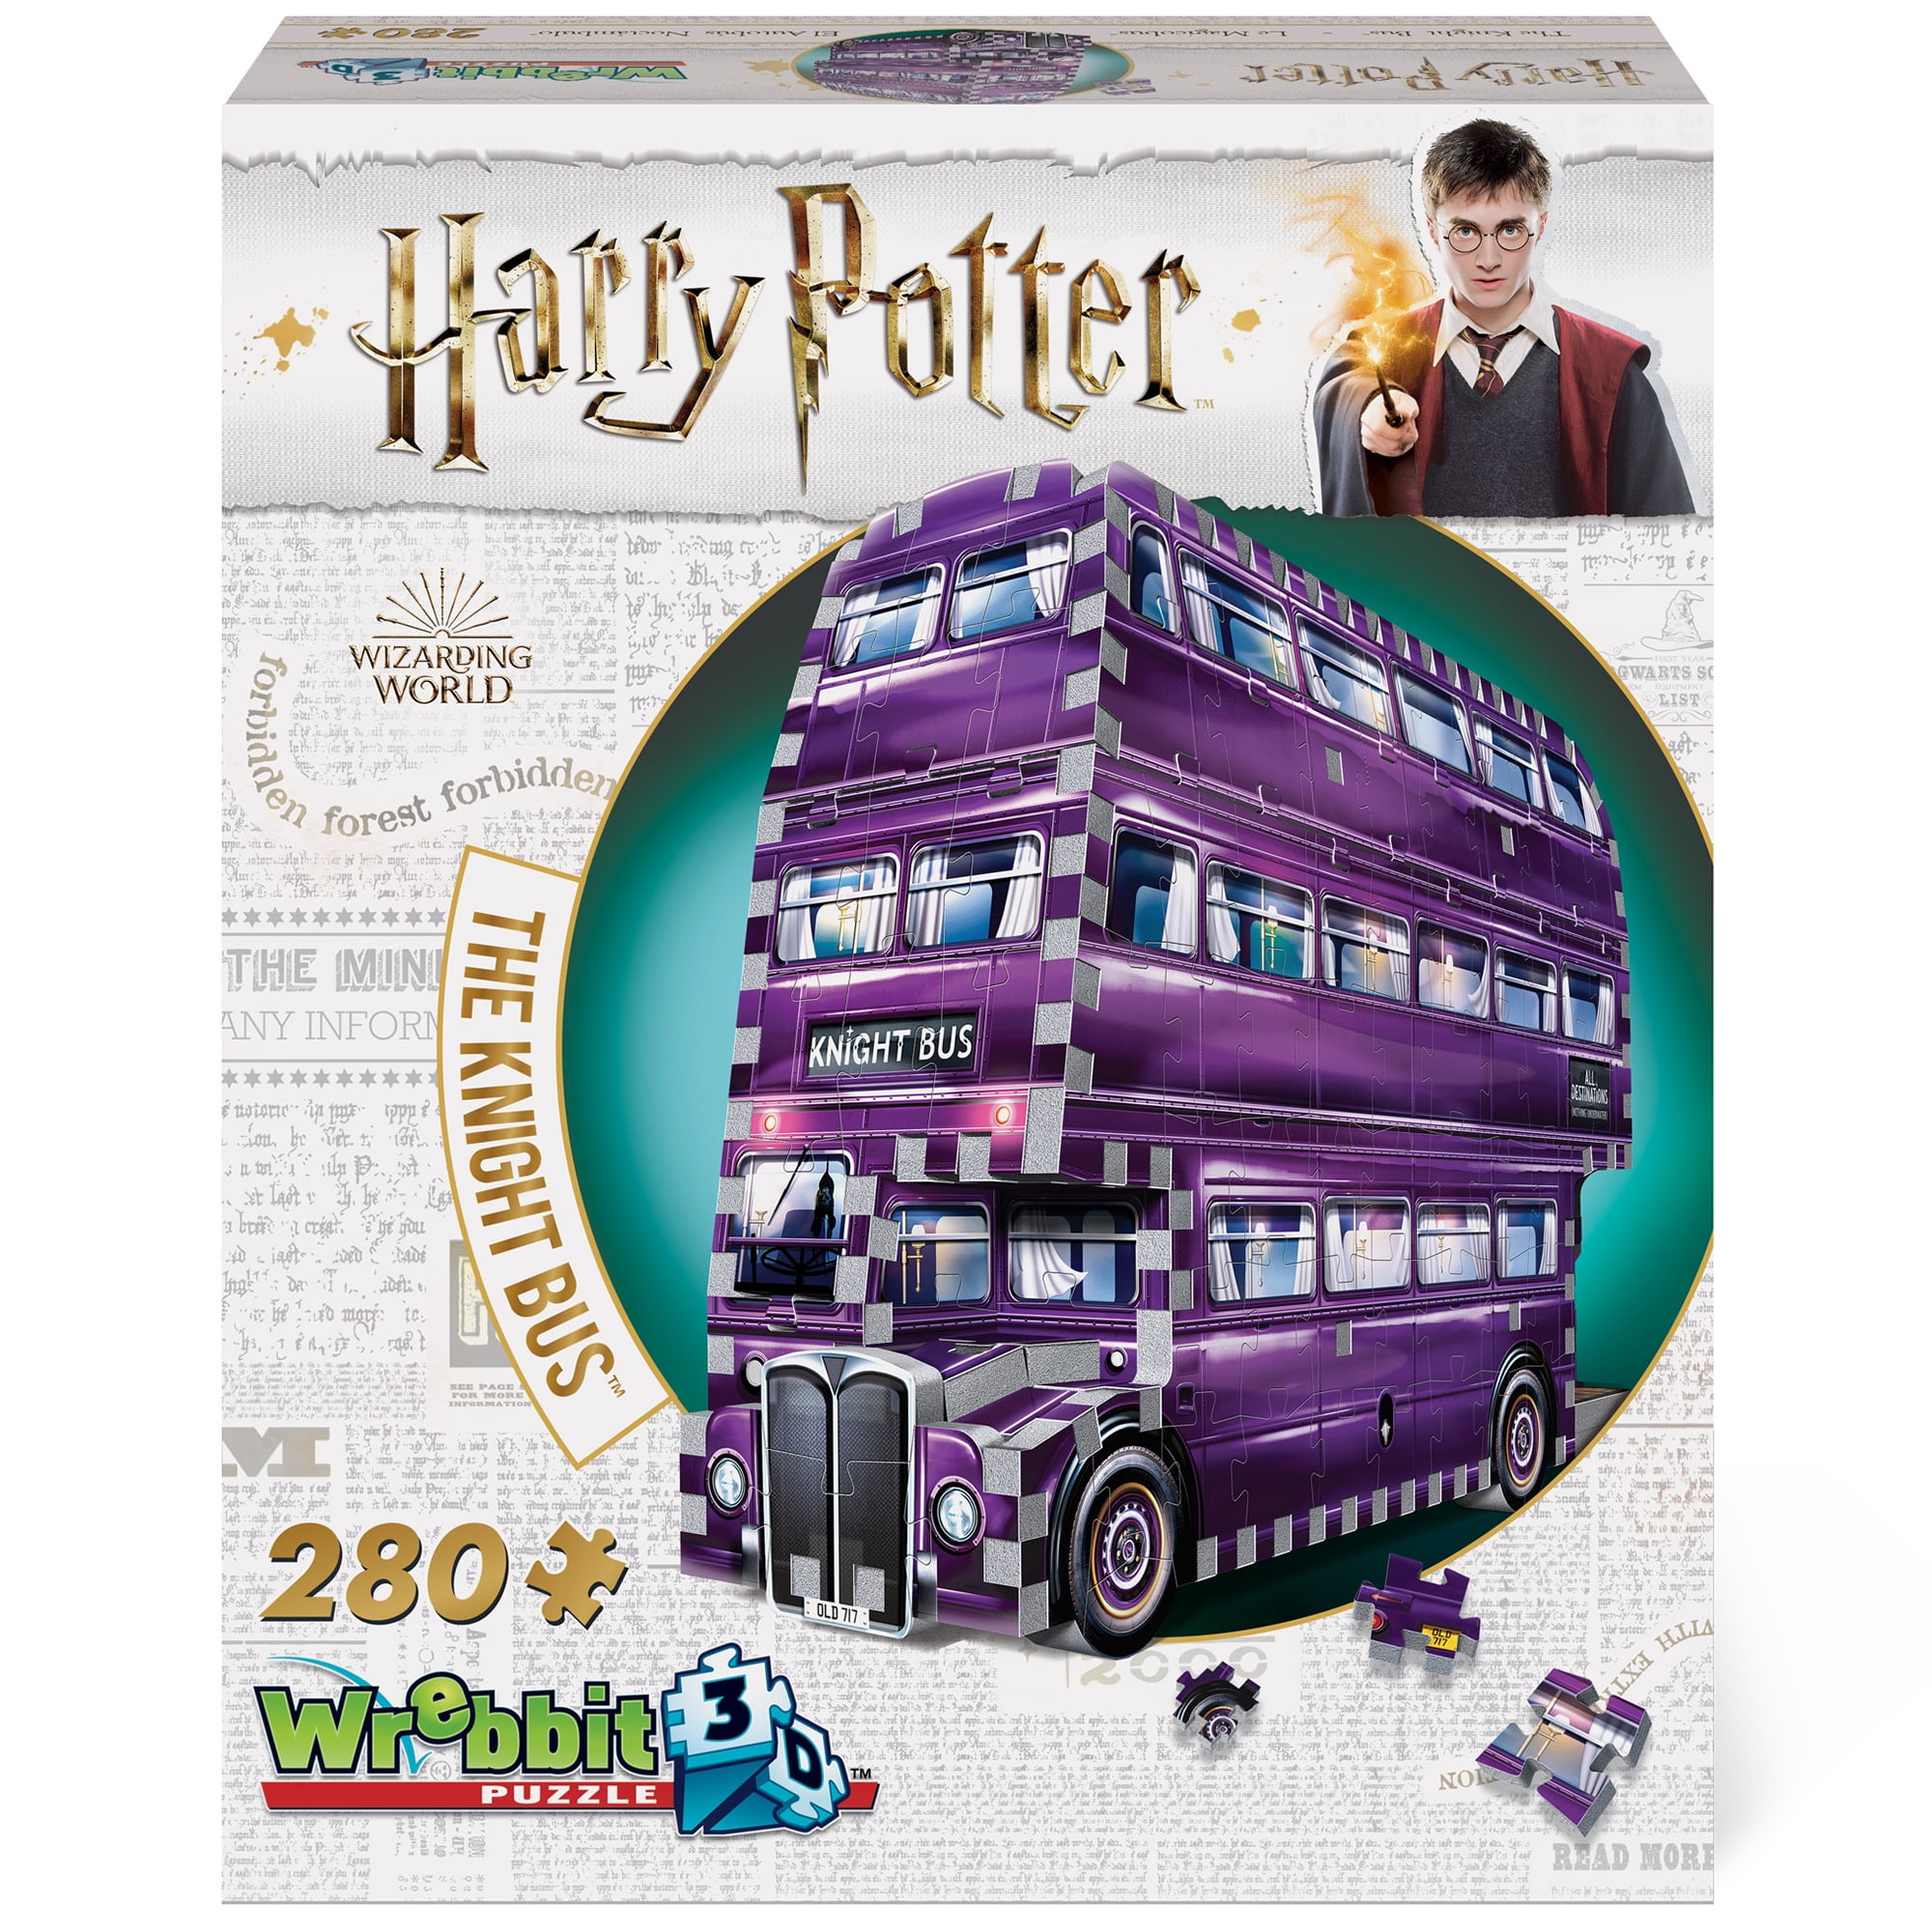 Coffret blu-ray Harry Potter intégrale 8 films + puzzle 3D Magicobus –